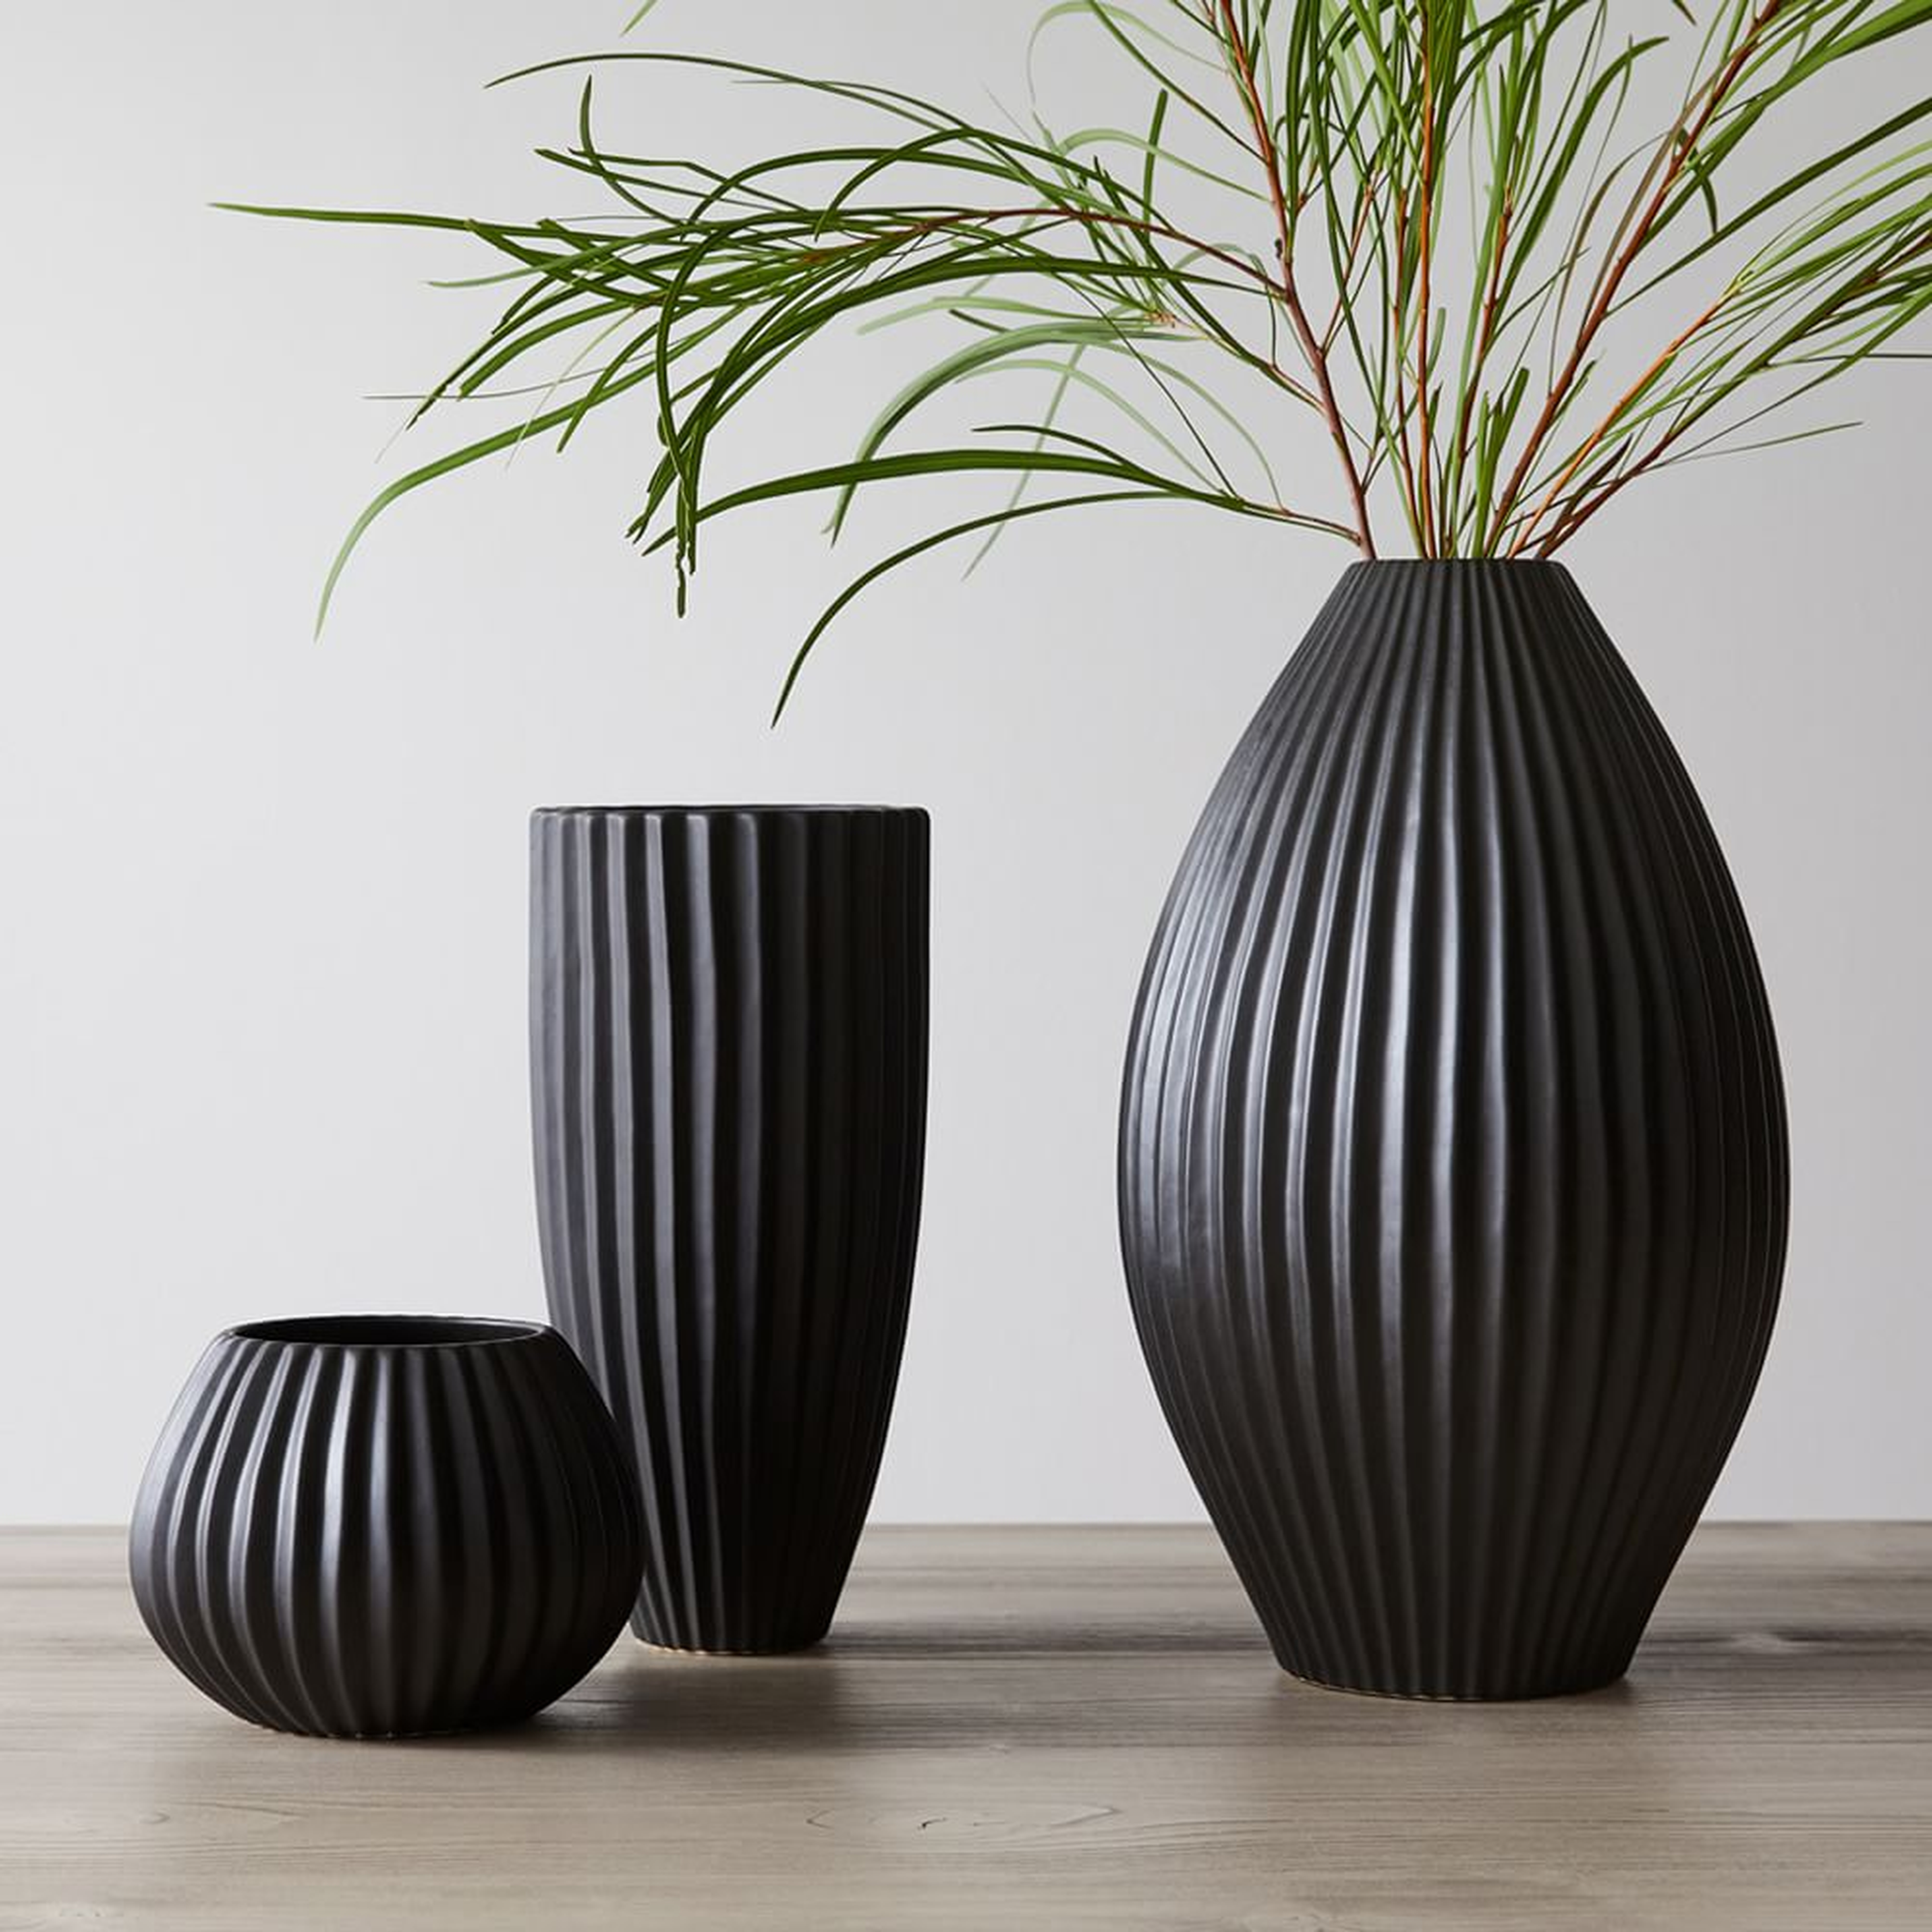 Sanibel Textured Black, Small Vase, Wide Tall Vase, Wide Vase, Set of 3 - West Elm